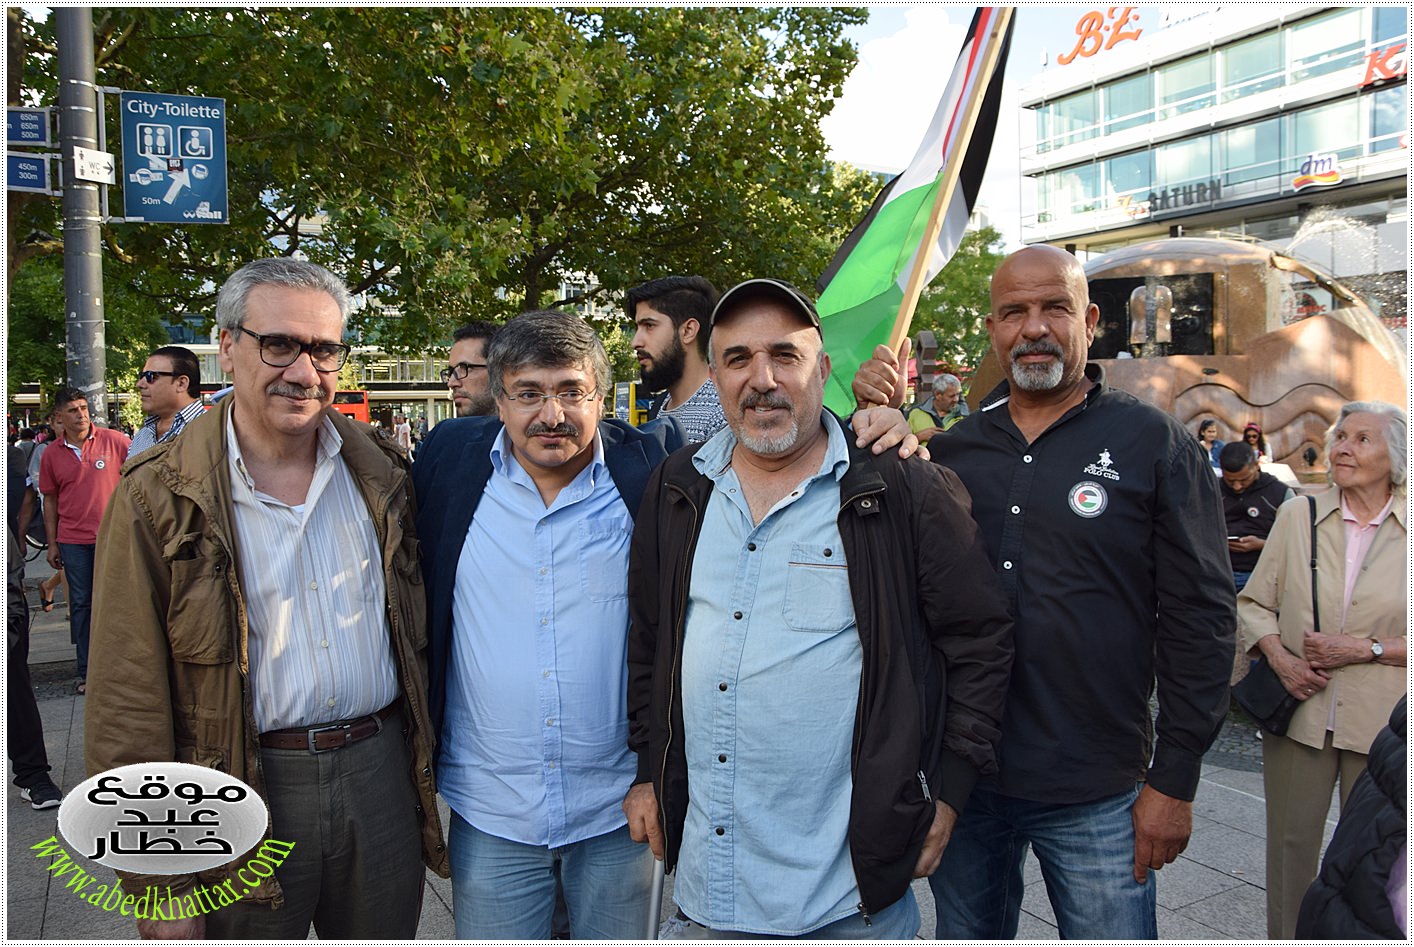 الدكتور خليل عيادي، التقيت به في تظاهرة فلسطينية في برلين